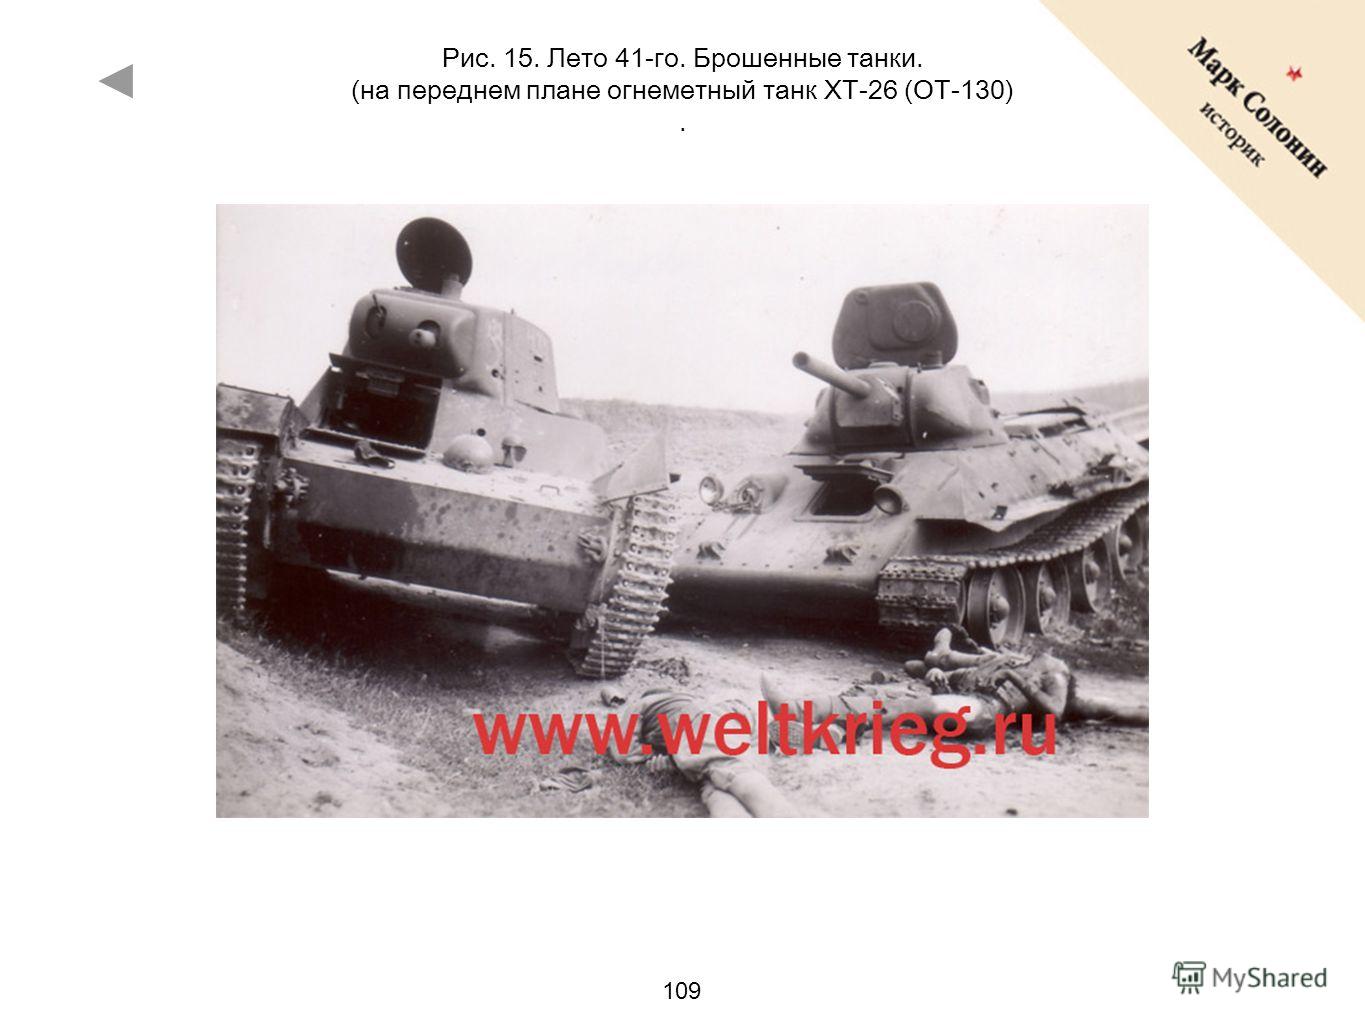 109 Рис. 15. Лето 41-го. Брошенные танки. (на переднем плане огнеметный танк ХТ-26 (ОТ-130).